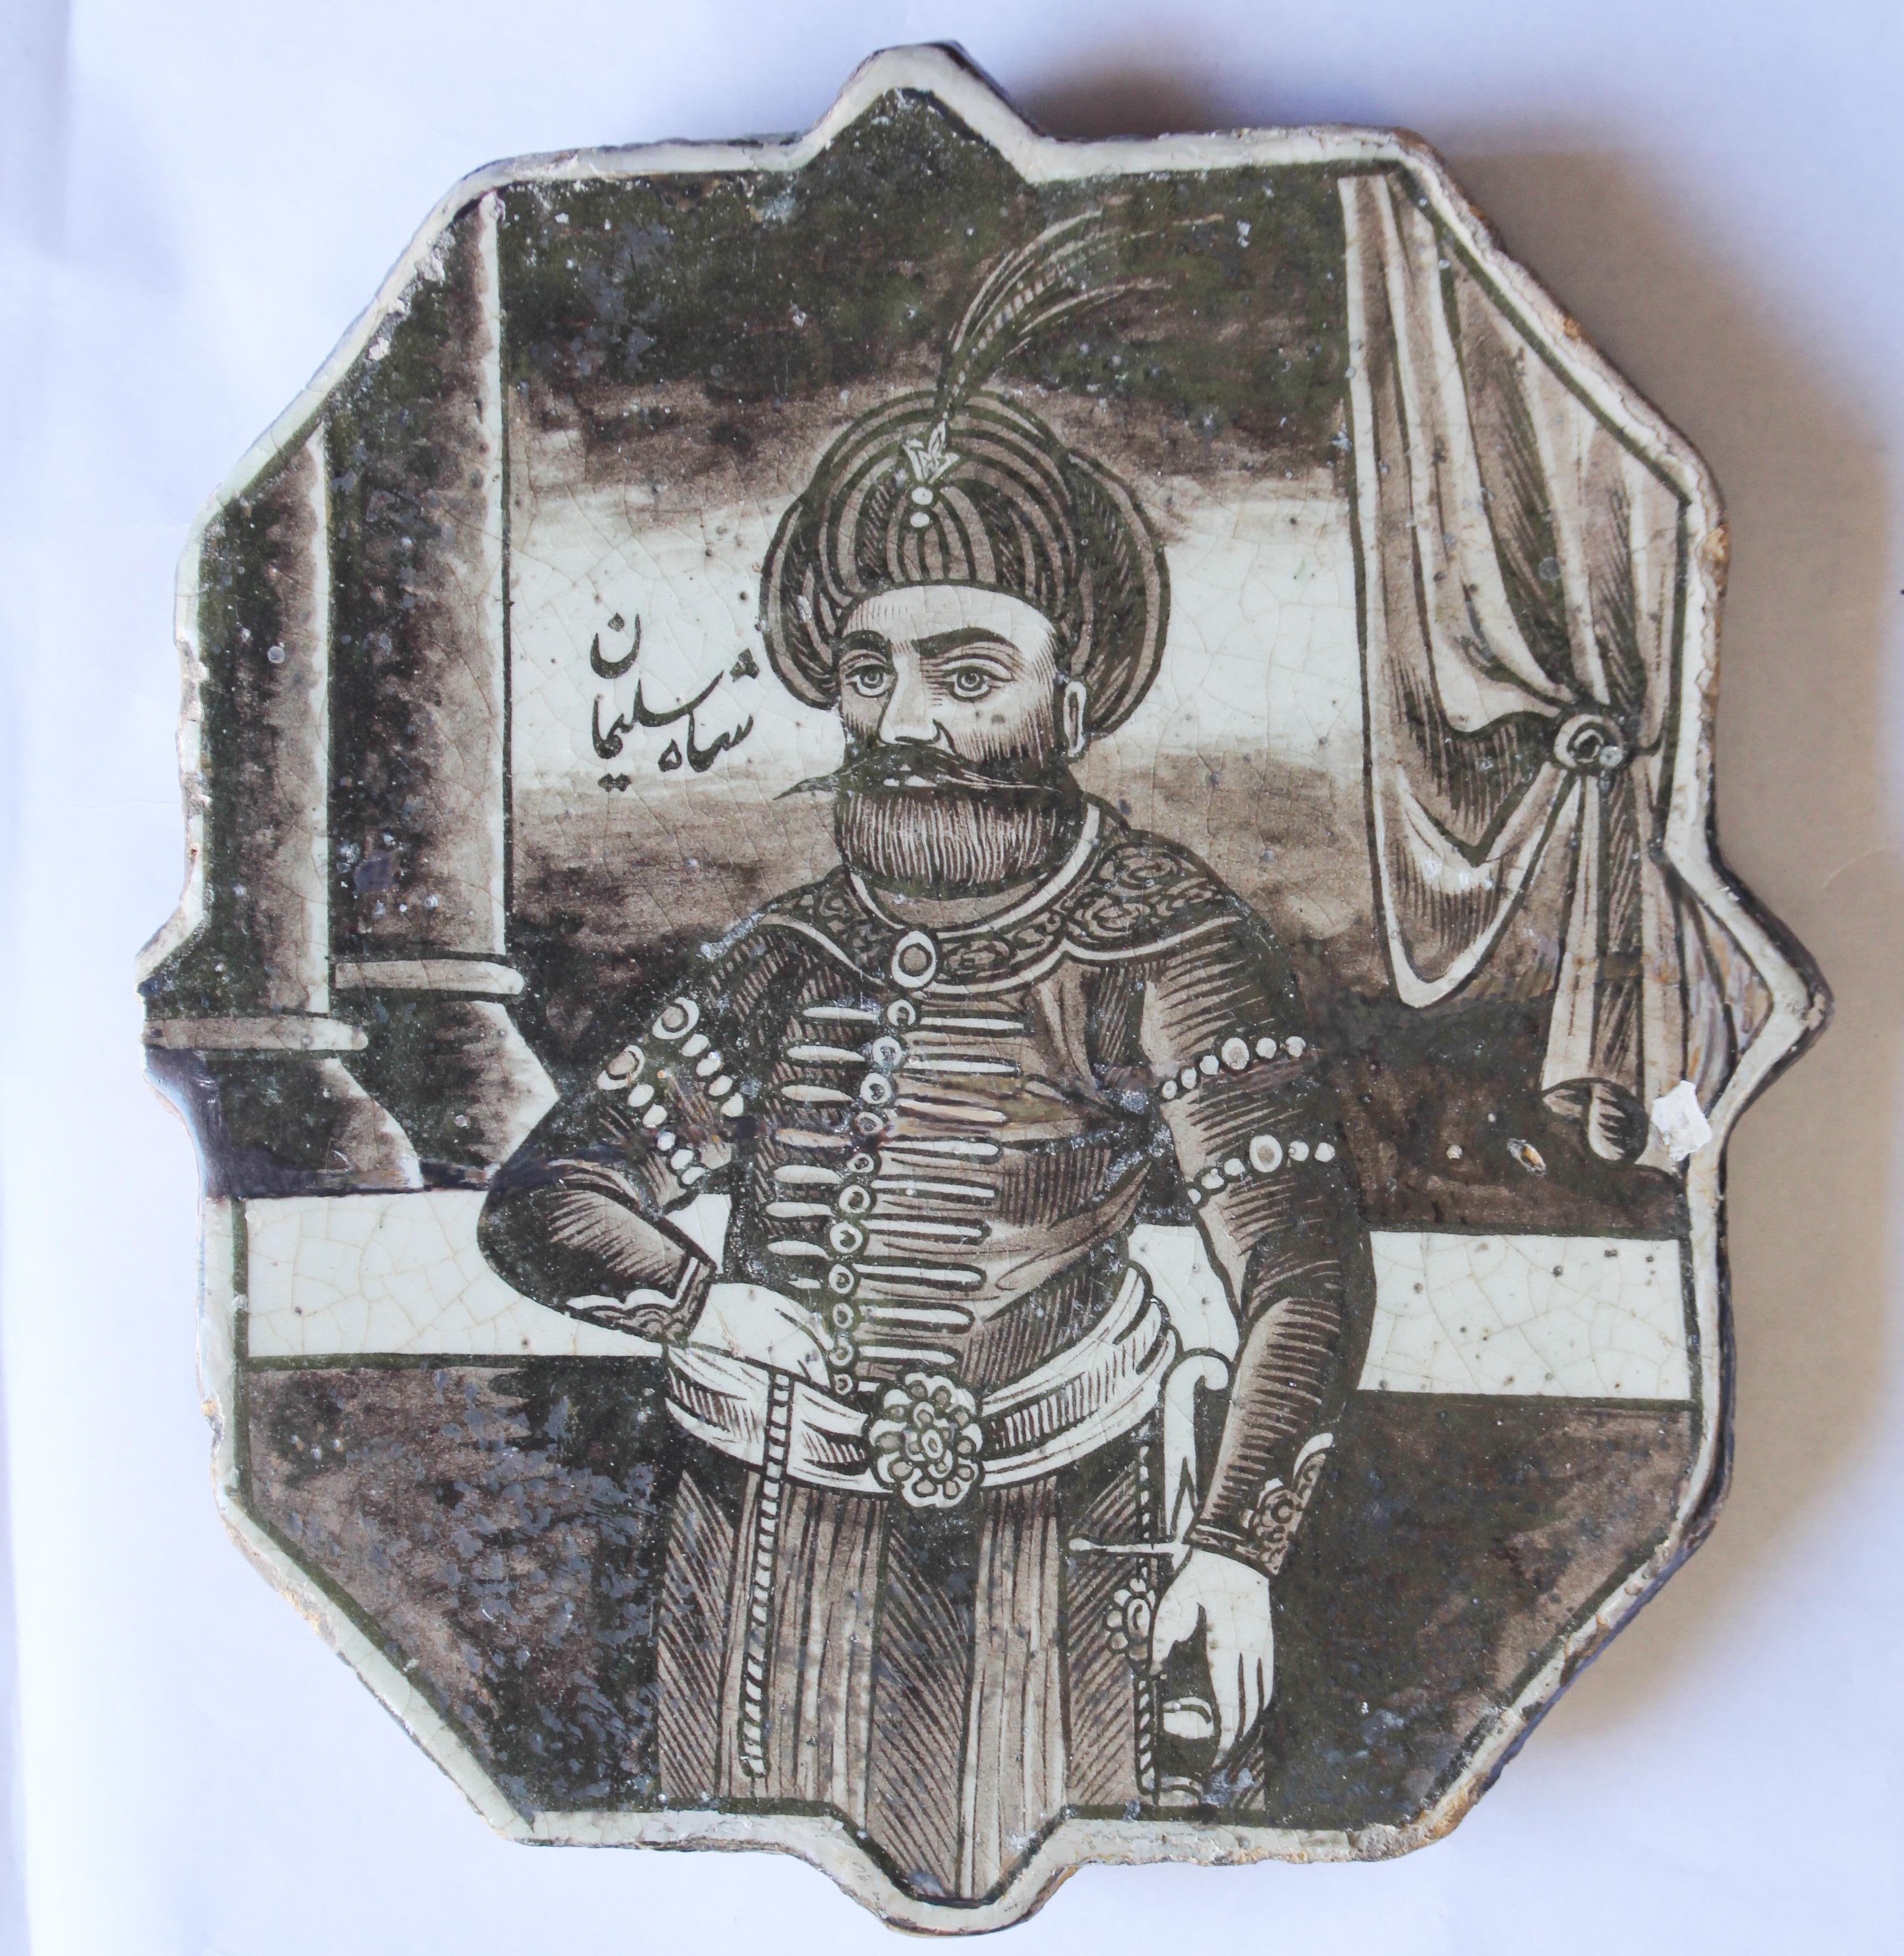 Antike handbemalte türkische Keramikfliese aus dem 19. Jahrhundert.
Gemälde Figur eines Schahs Suleiman in einem Palast vor einer Kolonnade und einem Vorhang.
Arabische Schrift in der linken oberen Ecke, 